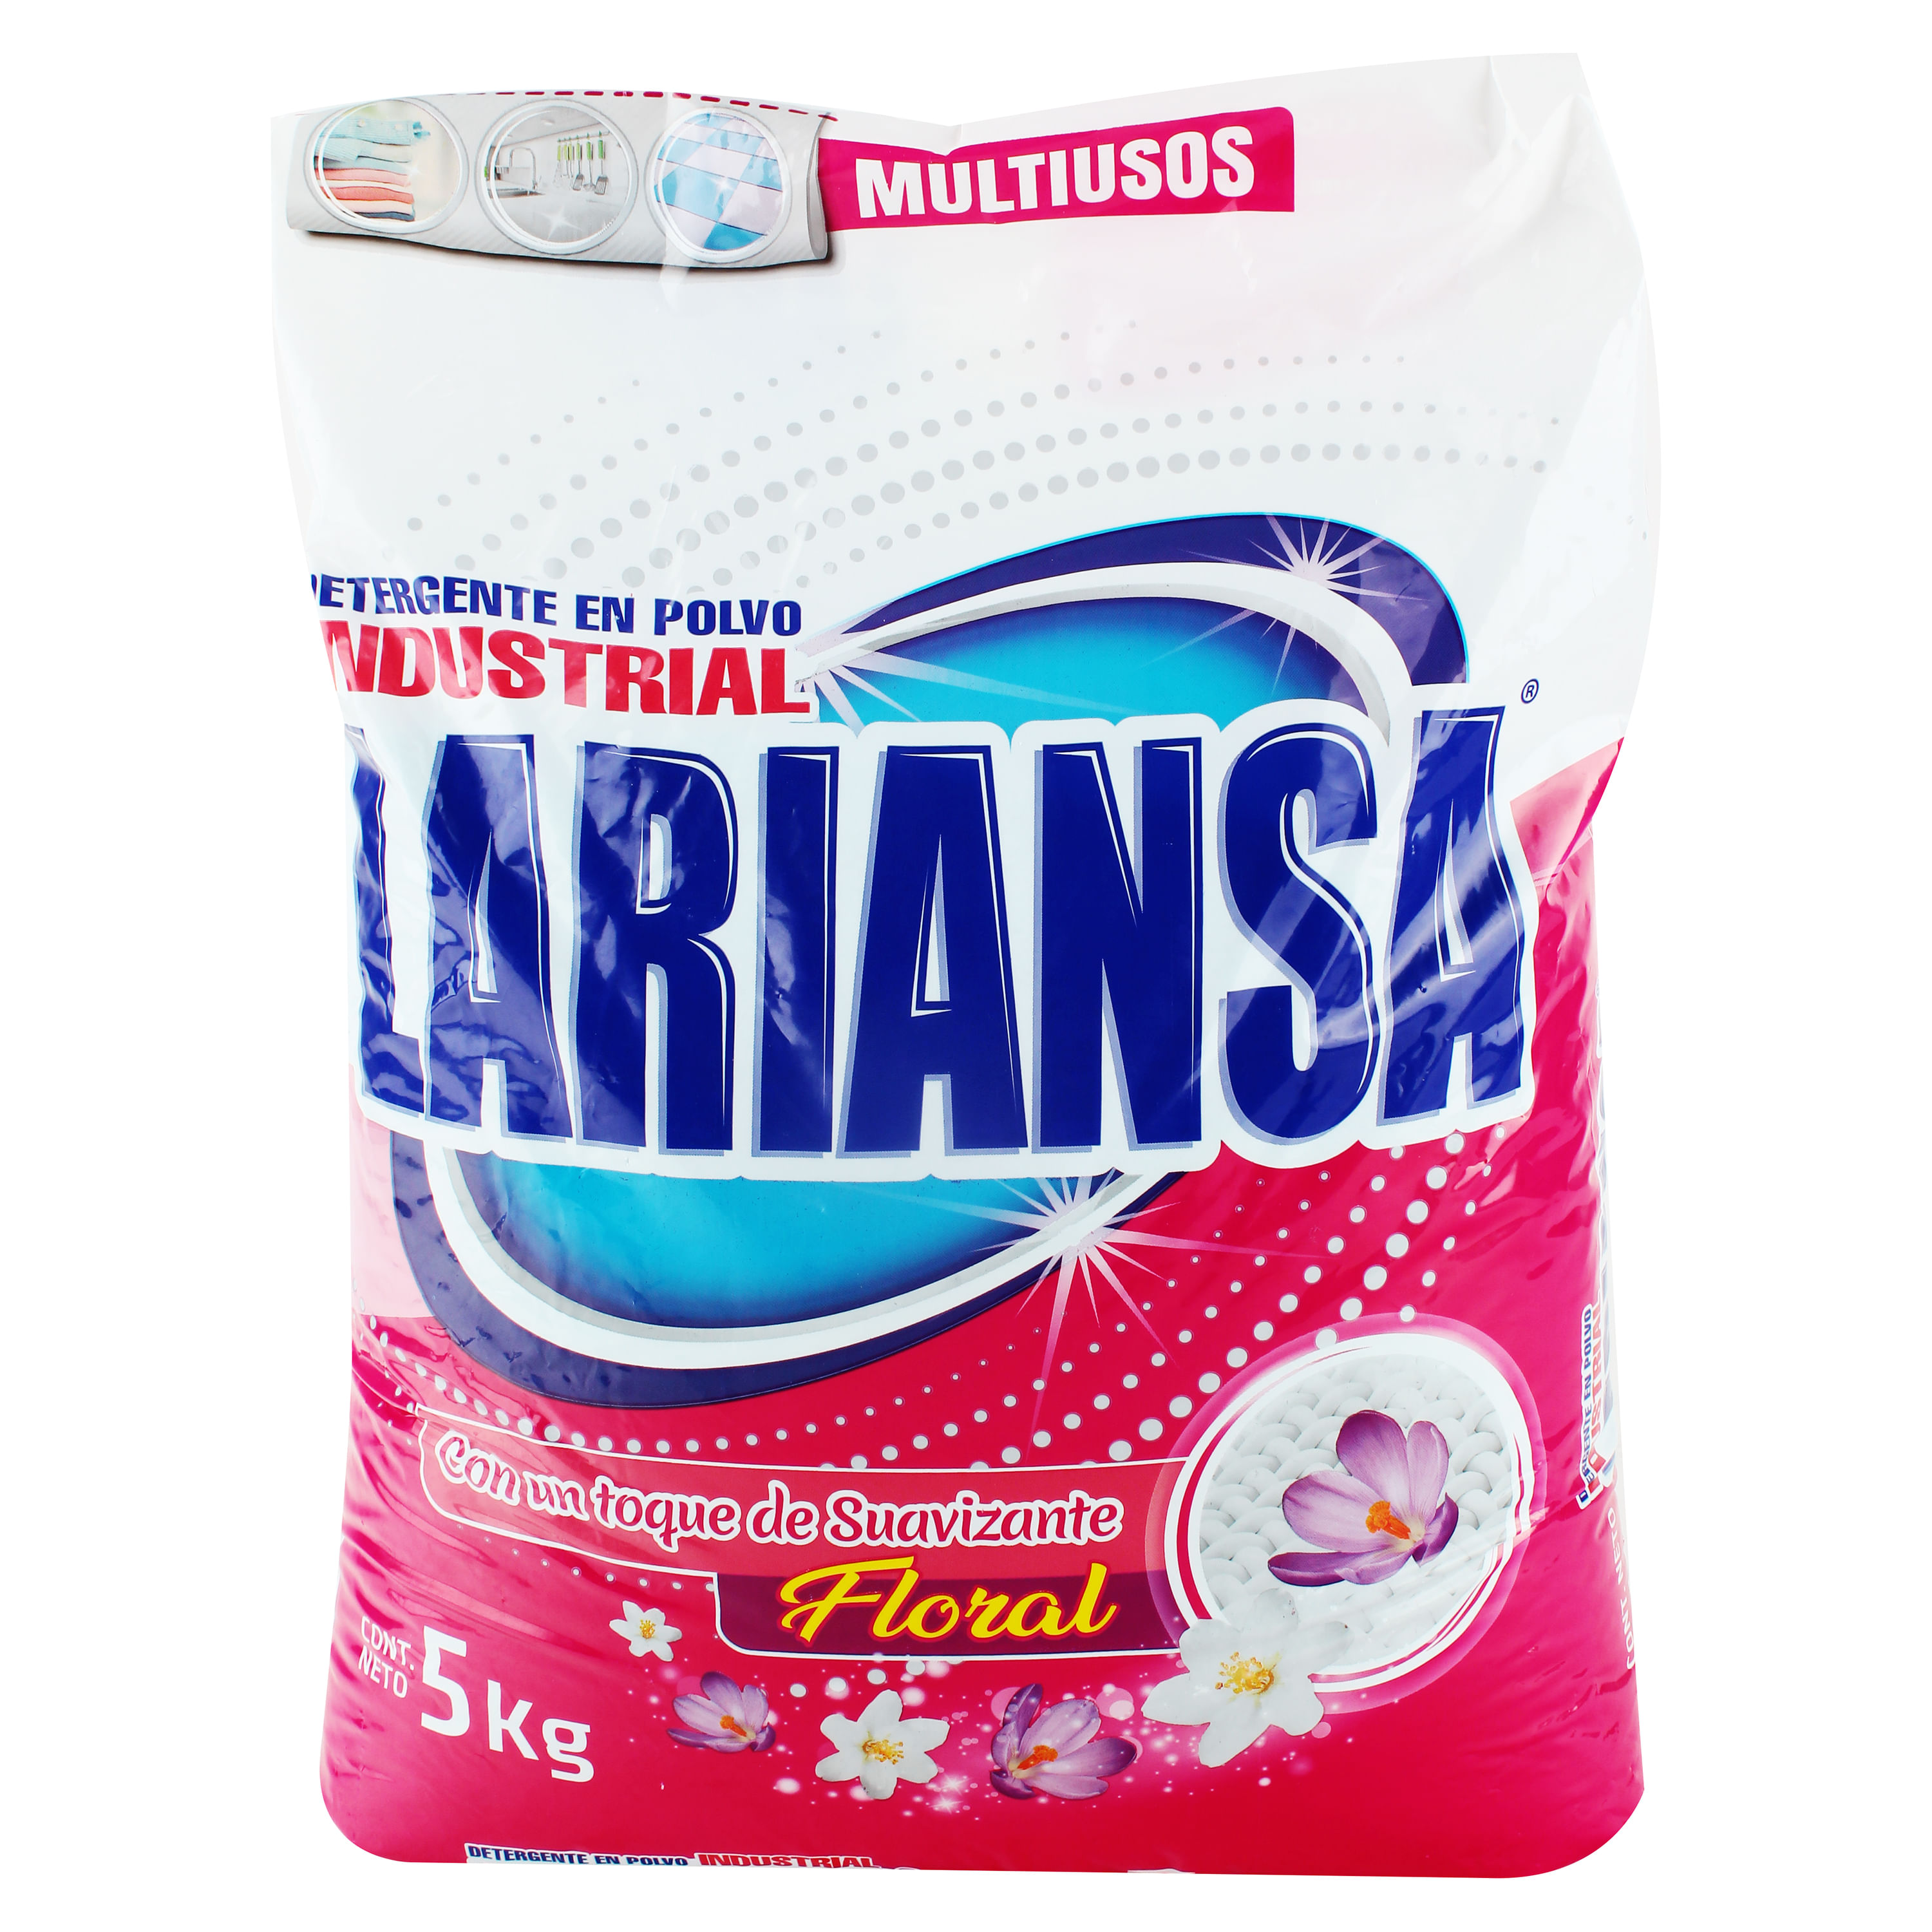 Detergente-Lariansa-Polvo-5kg-1-6482